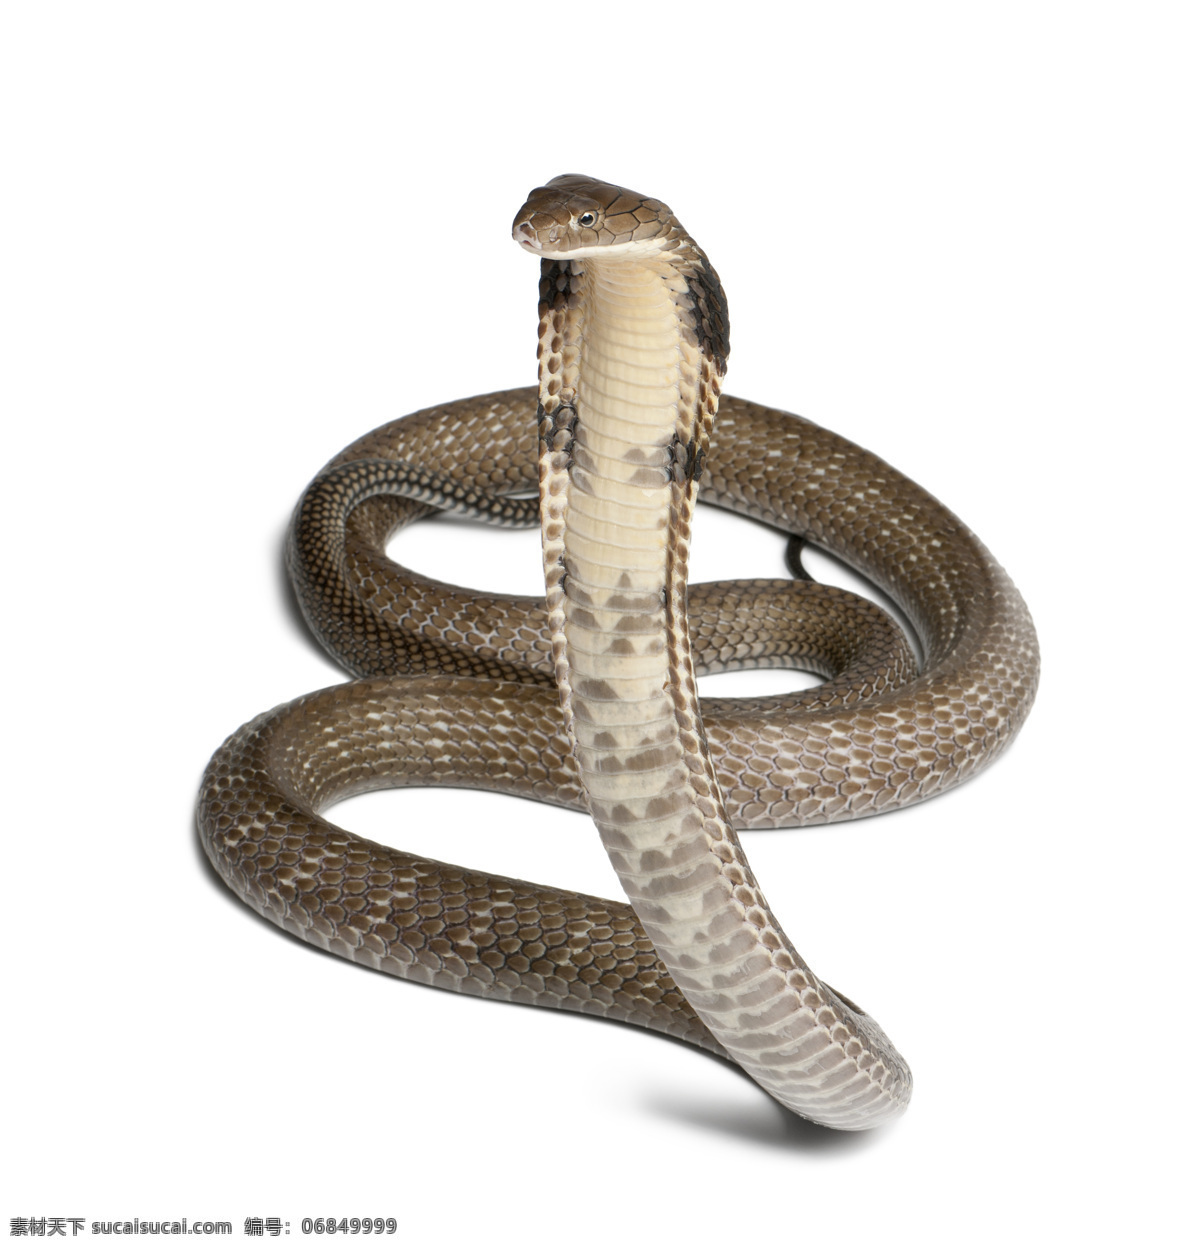 蛇 蛇类 花蛇 青蛇 爬行类 长蛇 蟒蛇 生物世界 野生动物 唯美 可爱 动物 野生 眼镜蛇